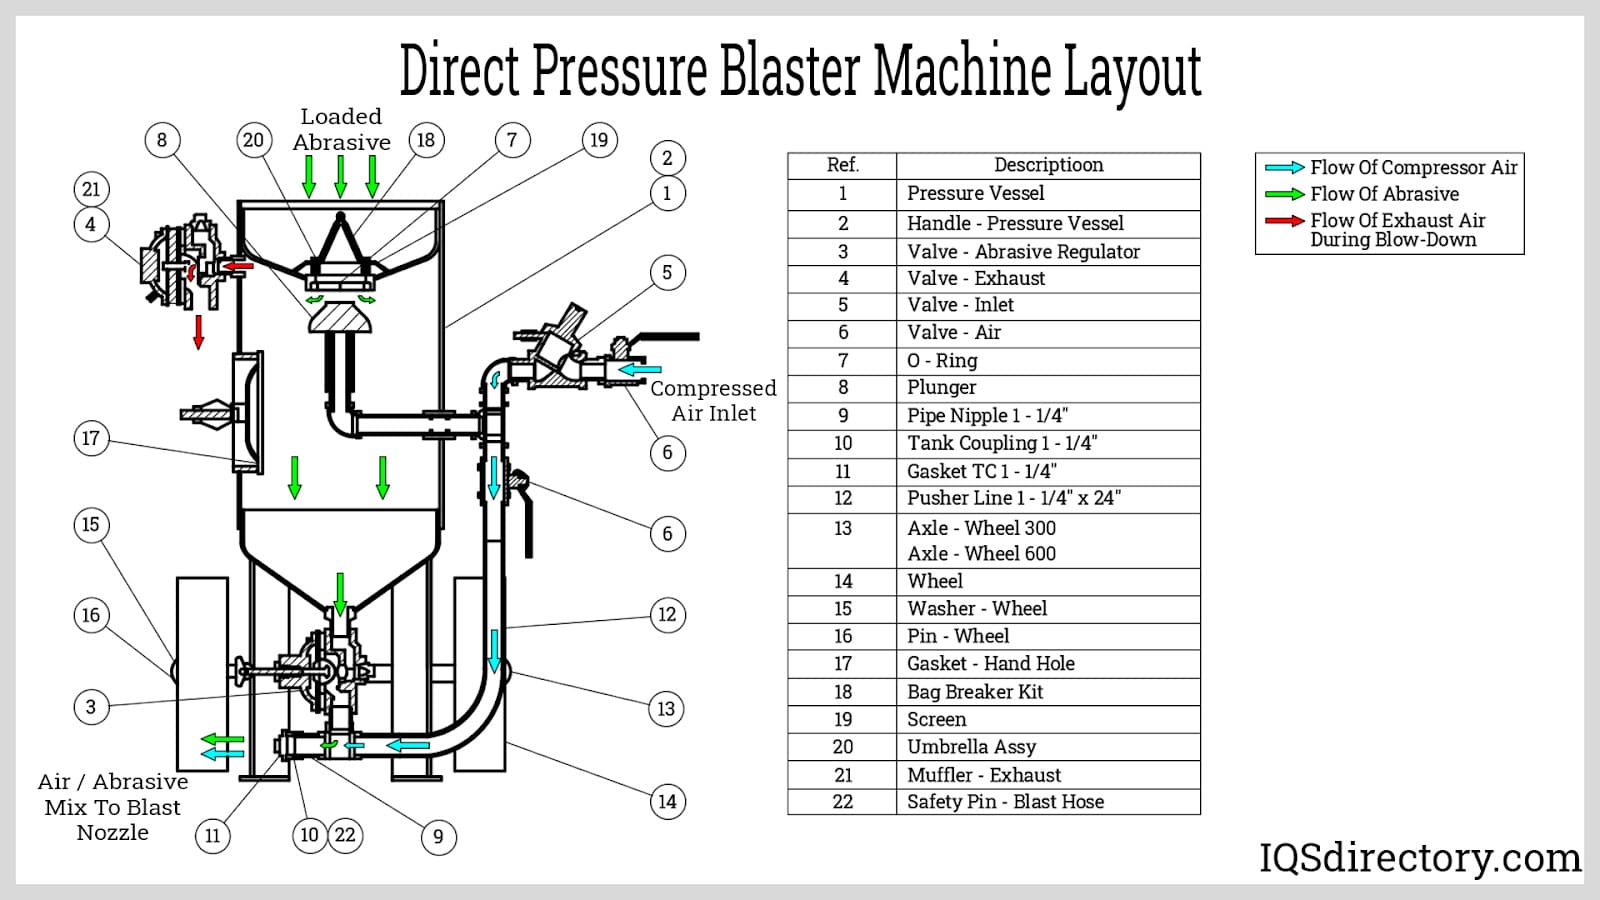 Direct Pressure Blaster Machine Layout